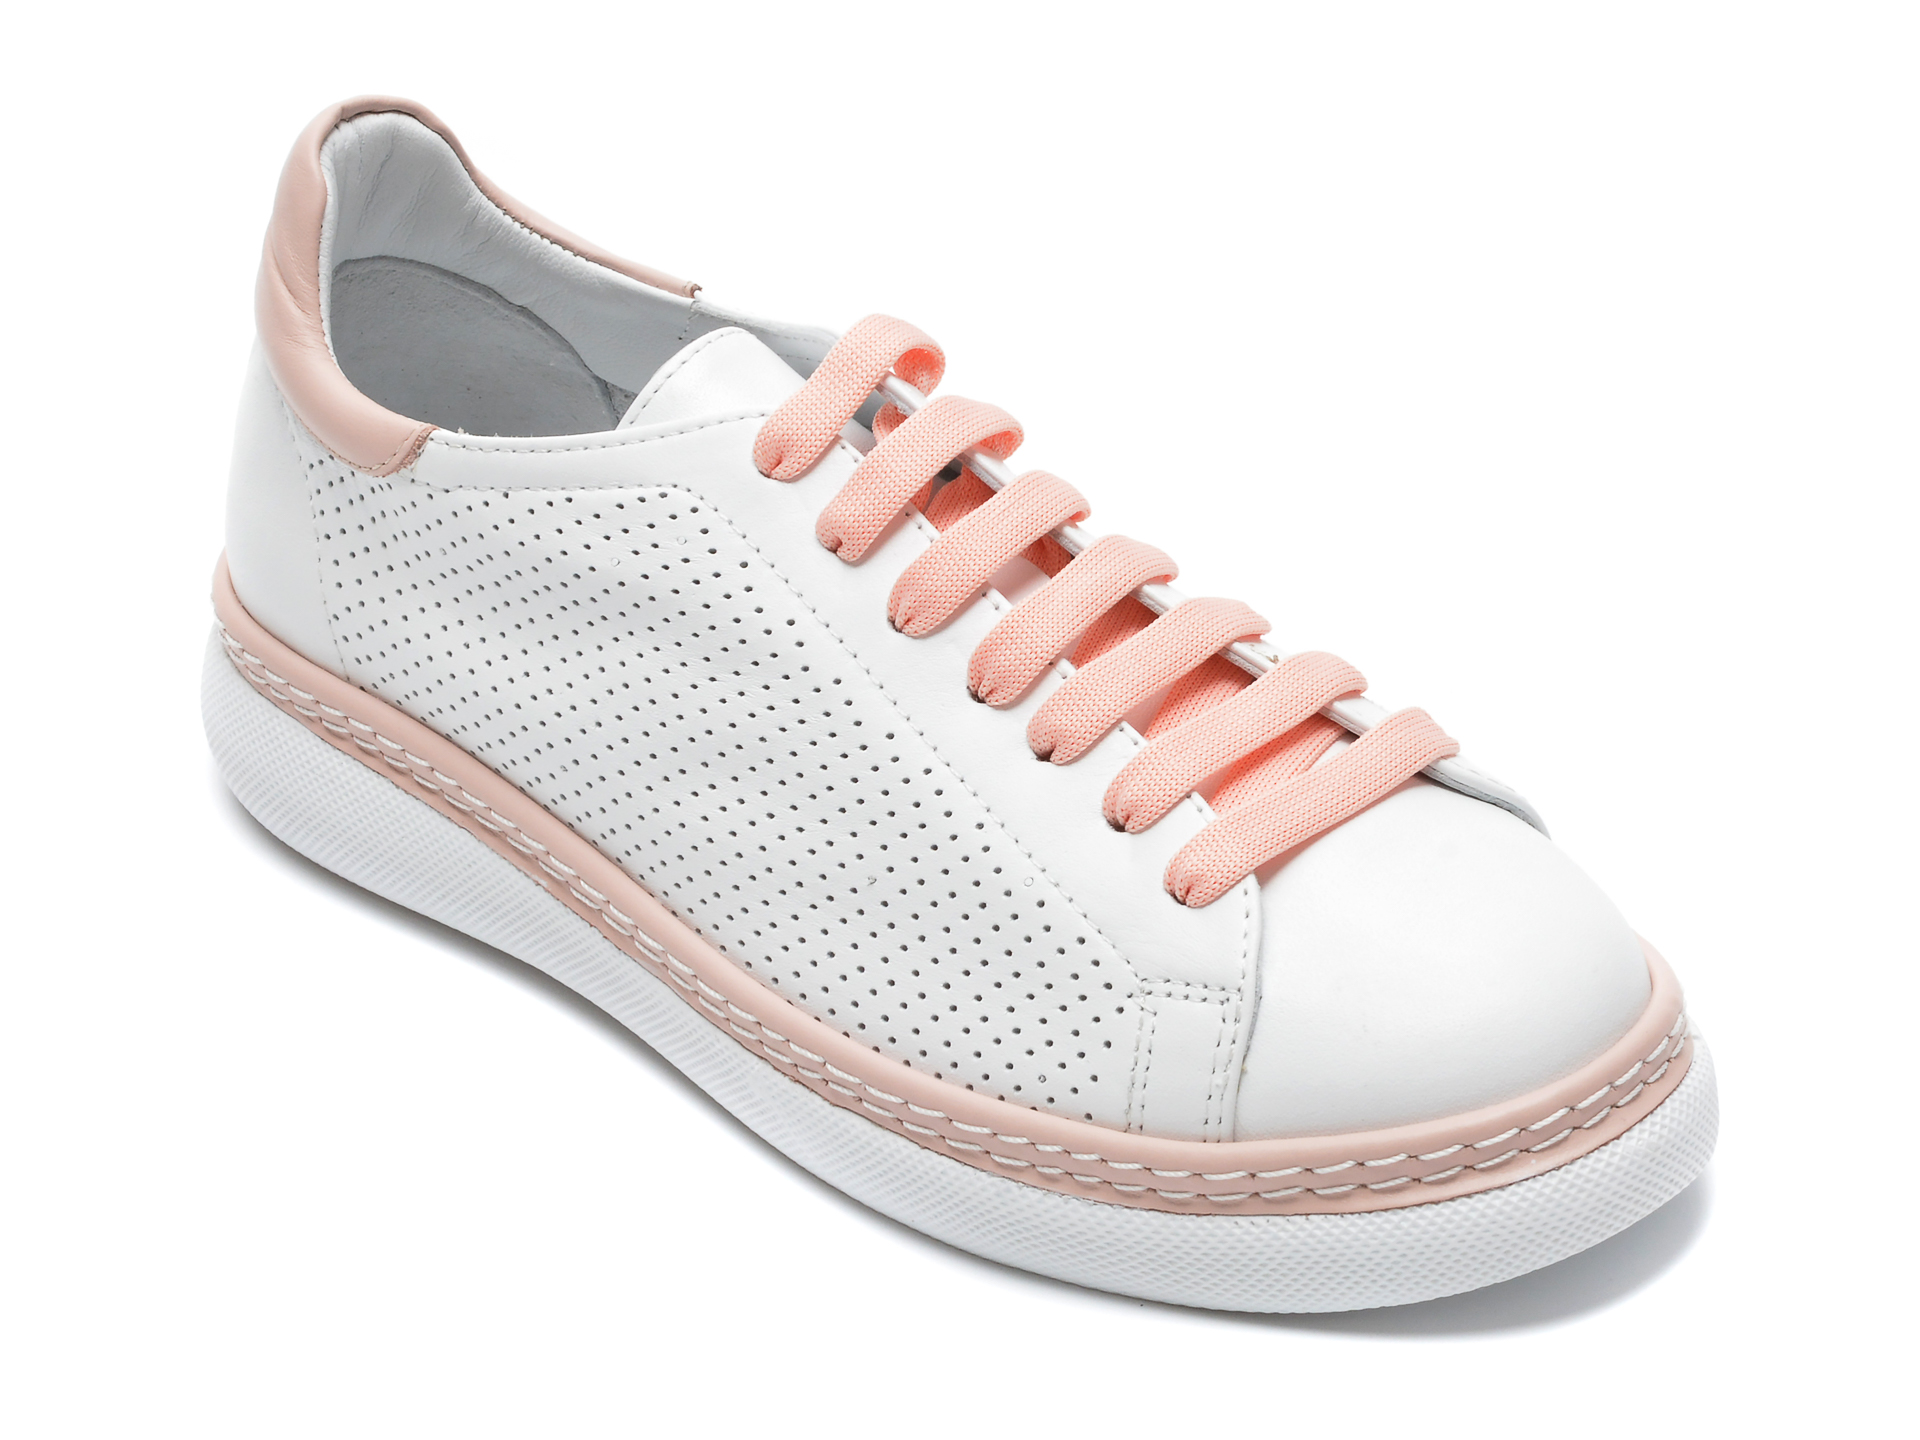 Pantofi sport CREPPY albi, 9200115, din piele naturala CREPPY